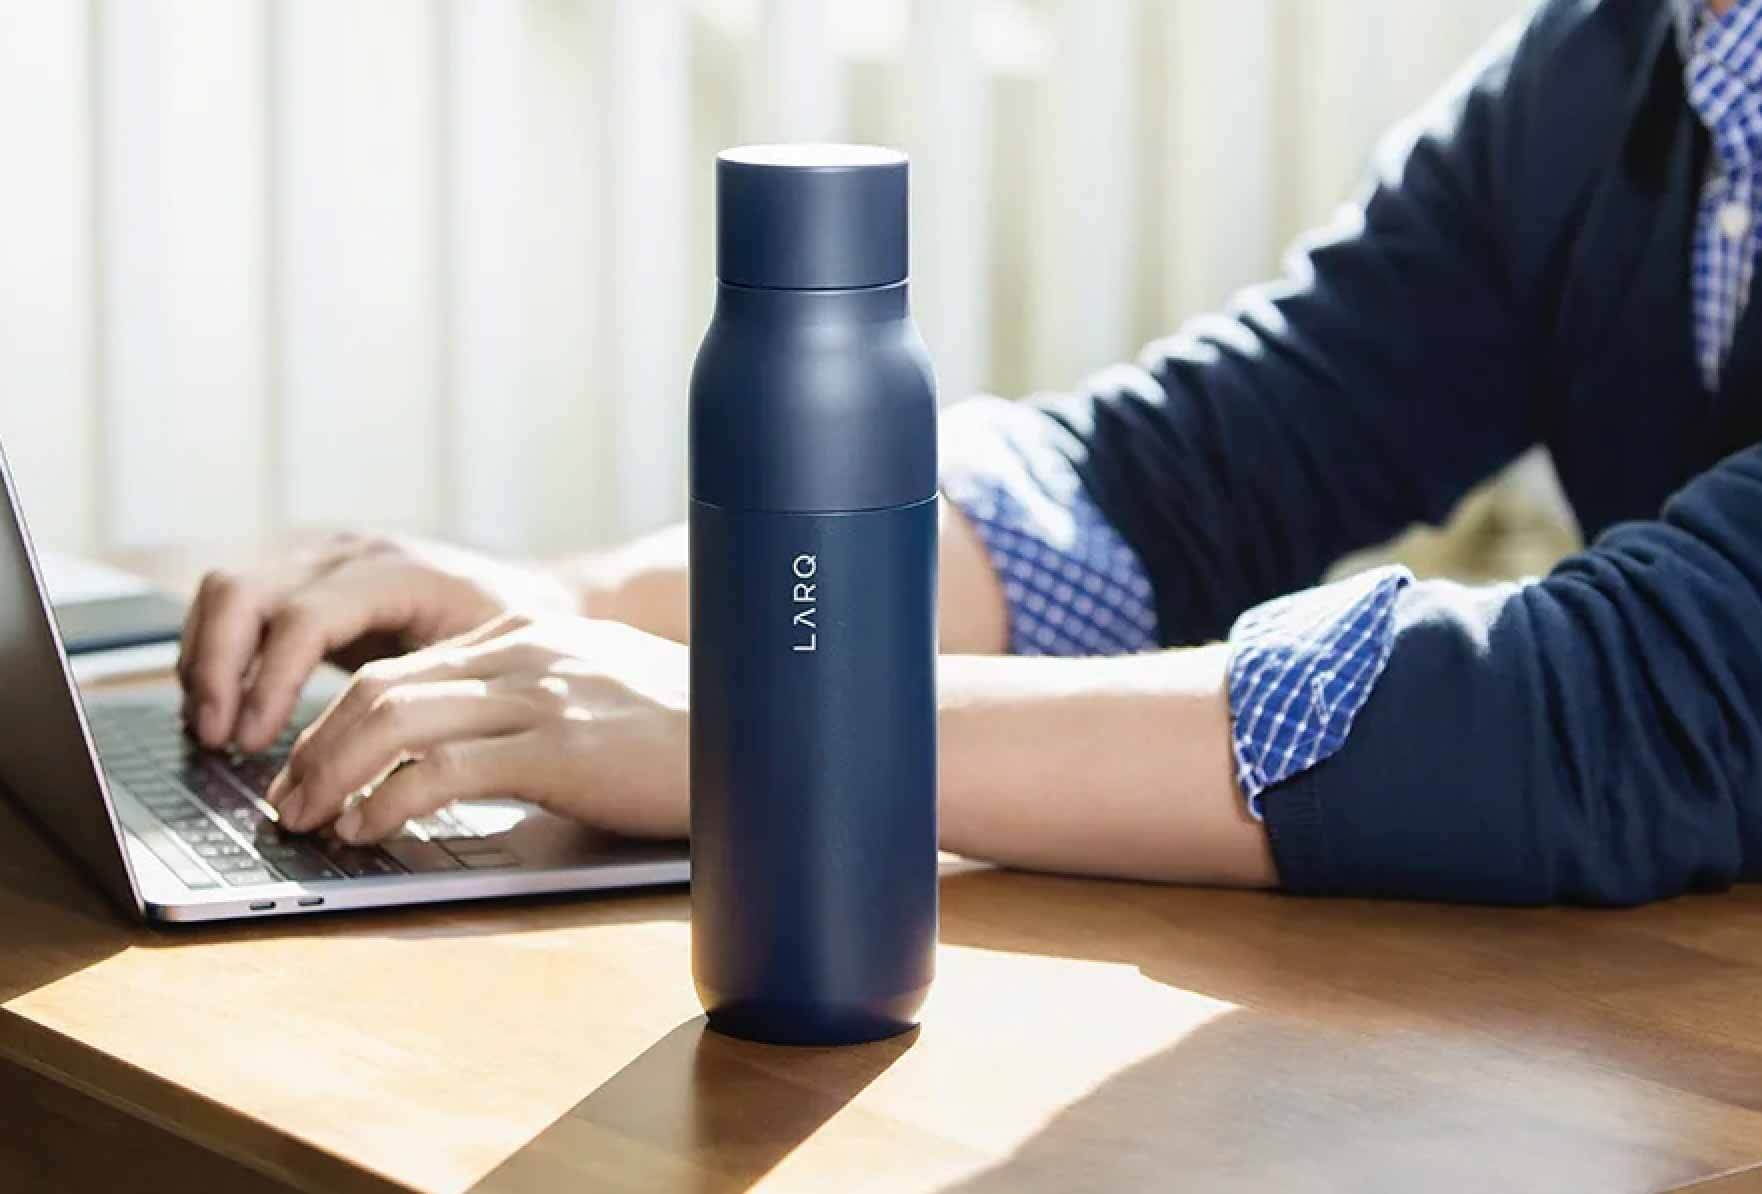 Лучшее руководство по подаркам для умных устройств для здоровья / фитнеса - Larq Smart Water Bottle